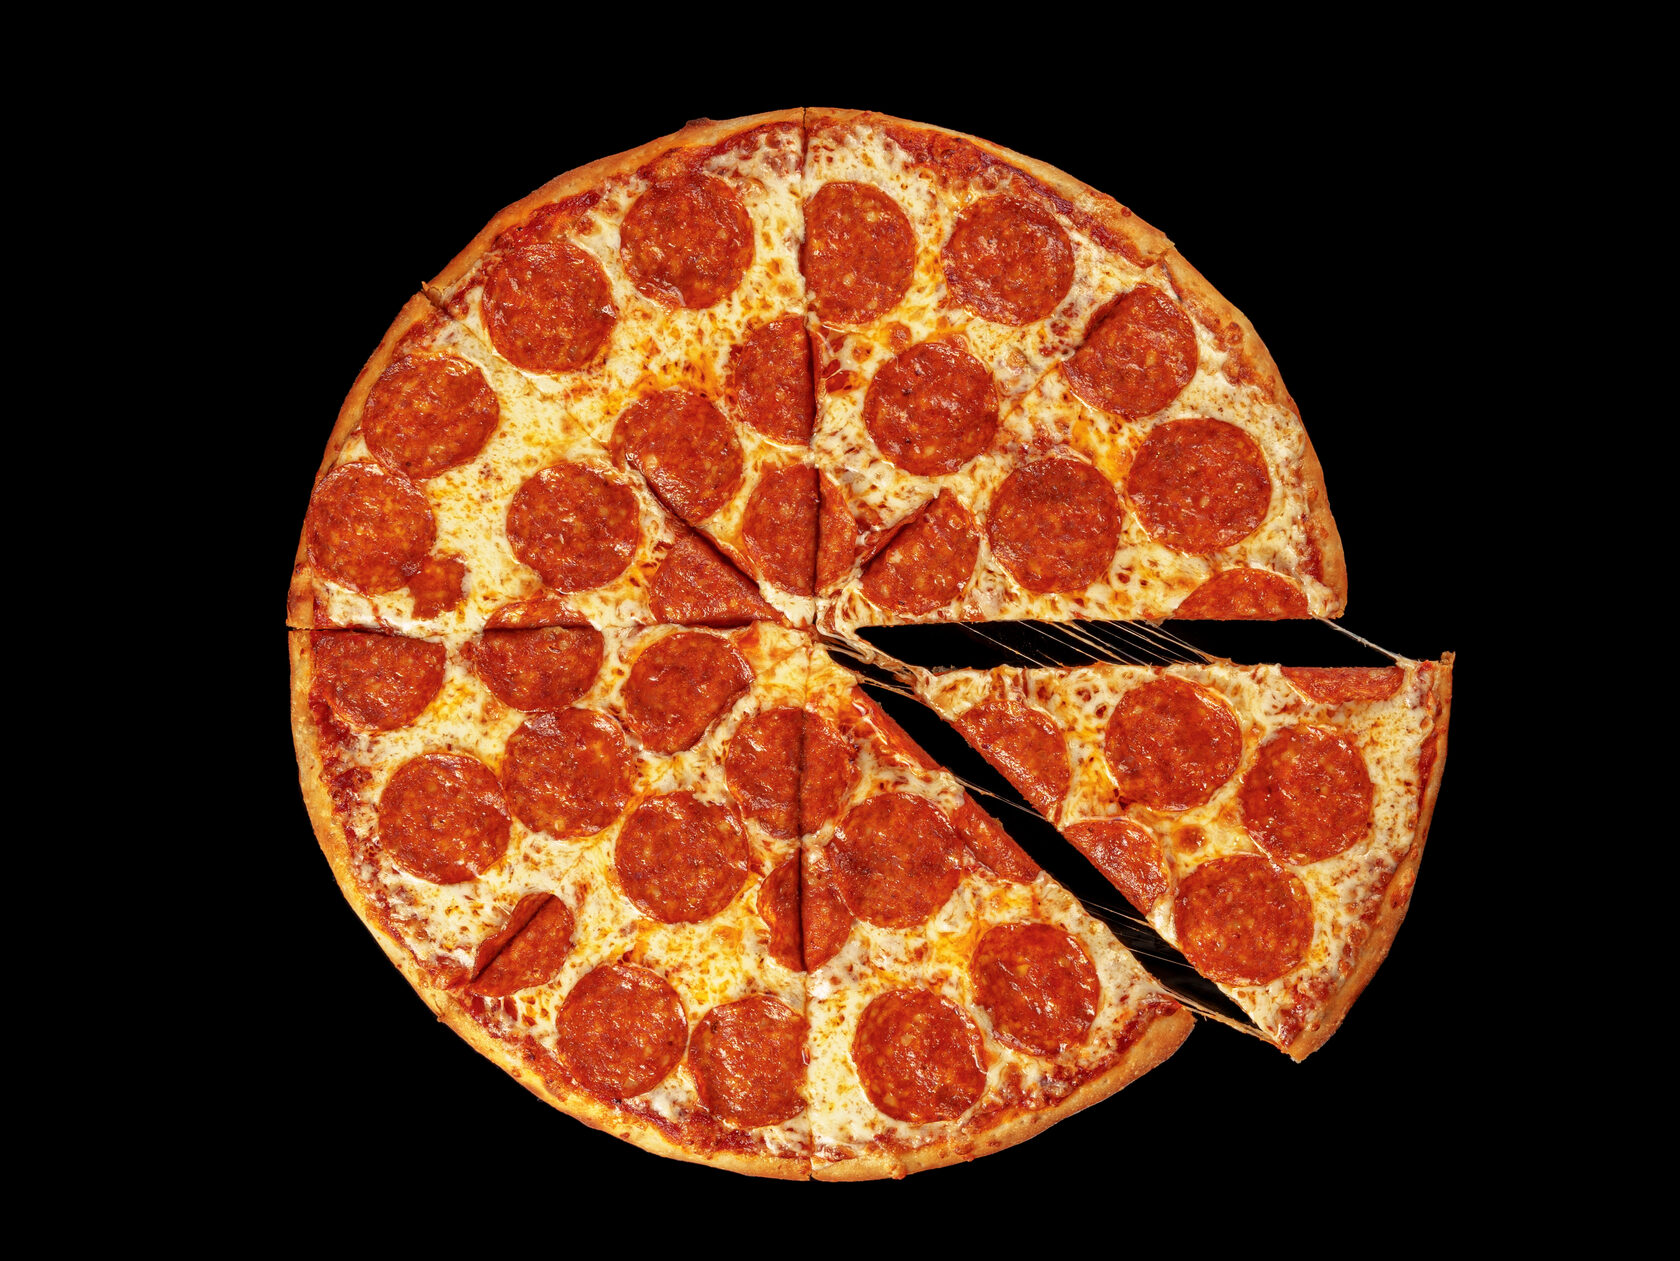 технологические карты для пиццы пепперони фото 99